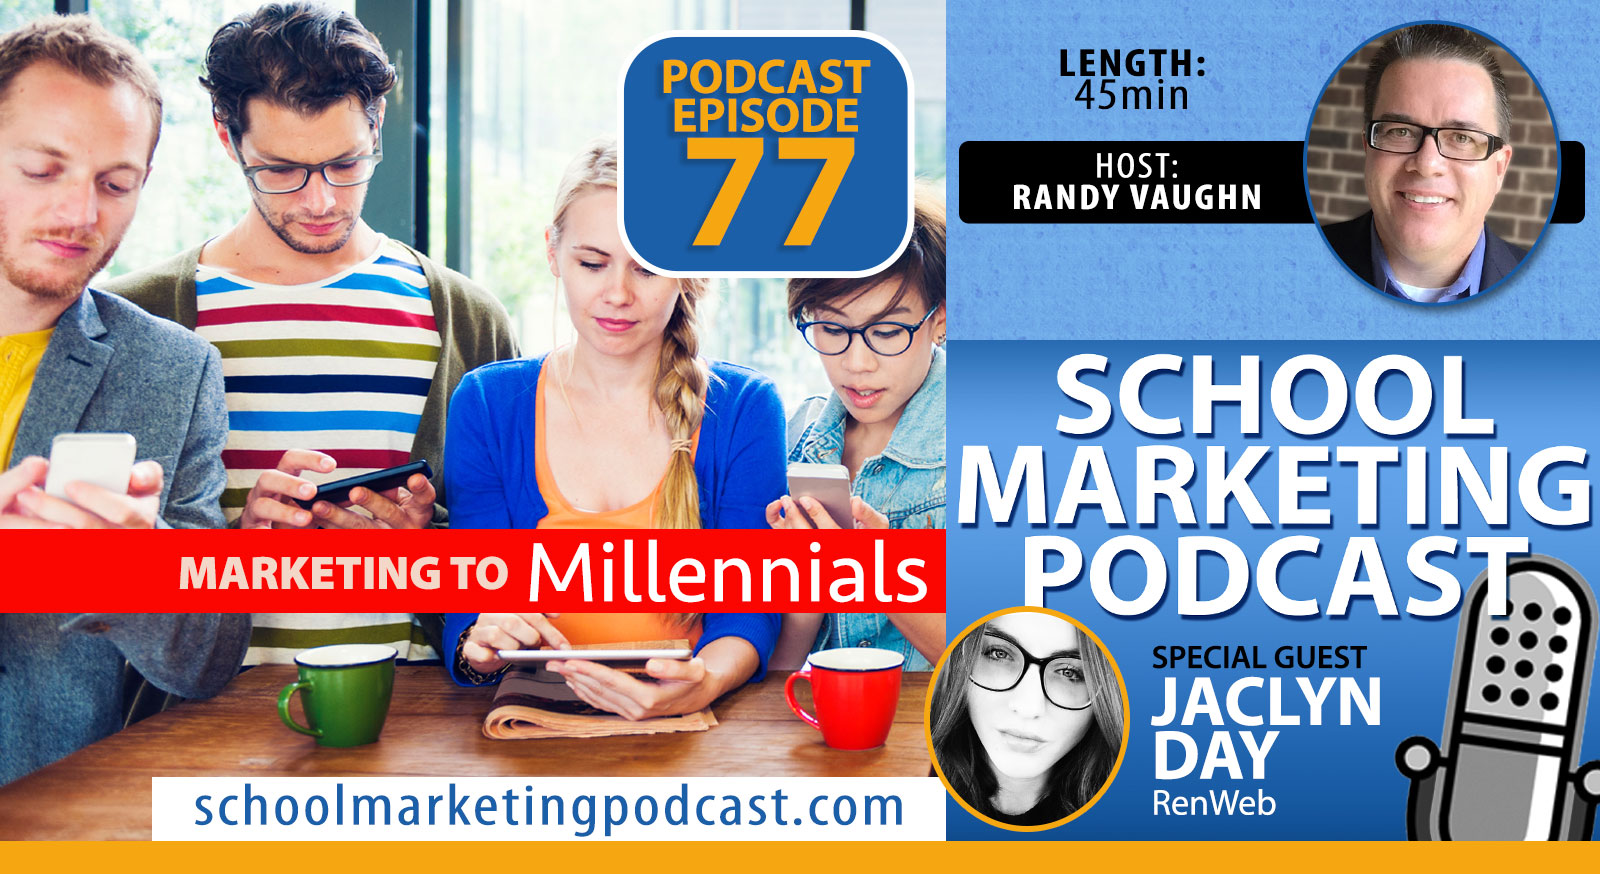 Marketing to Millennials - School Marketing Podcast Interview w @RenWebPower Jaclyn Day & @SchoolMktg